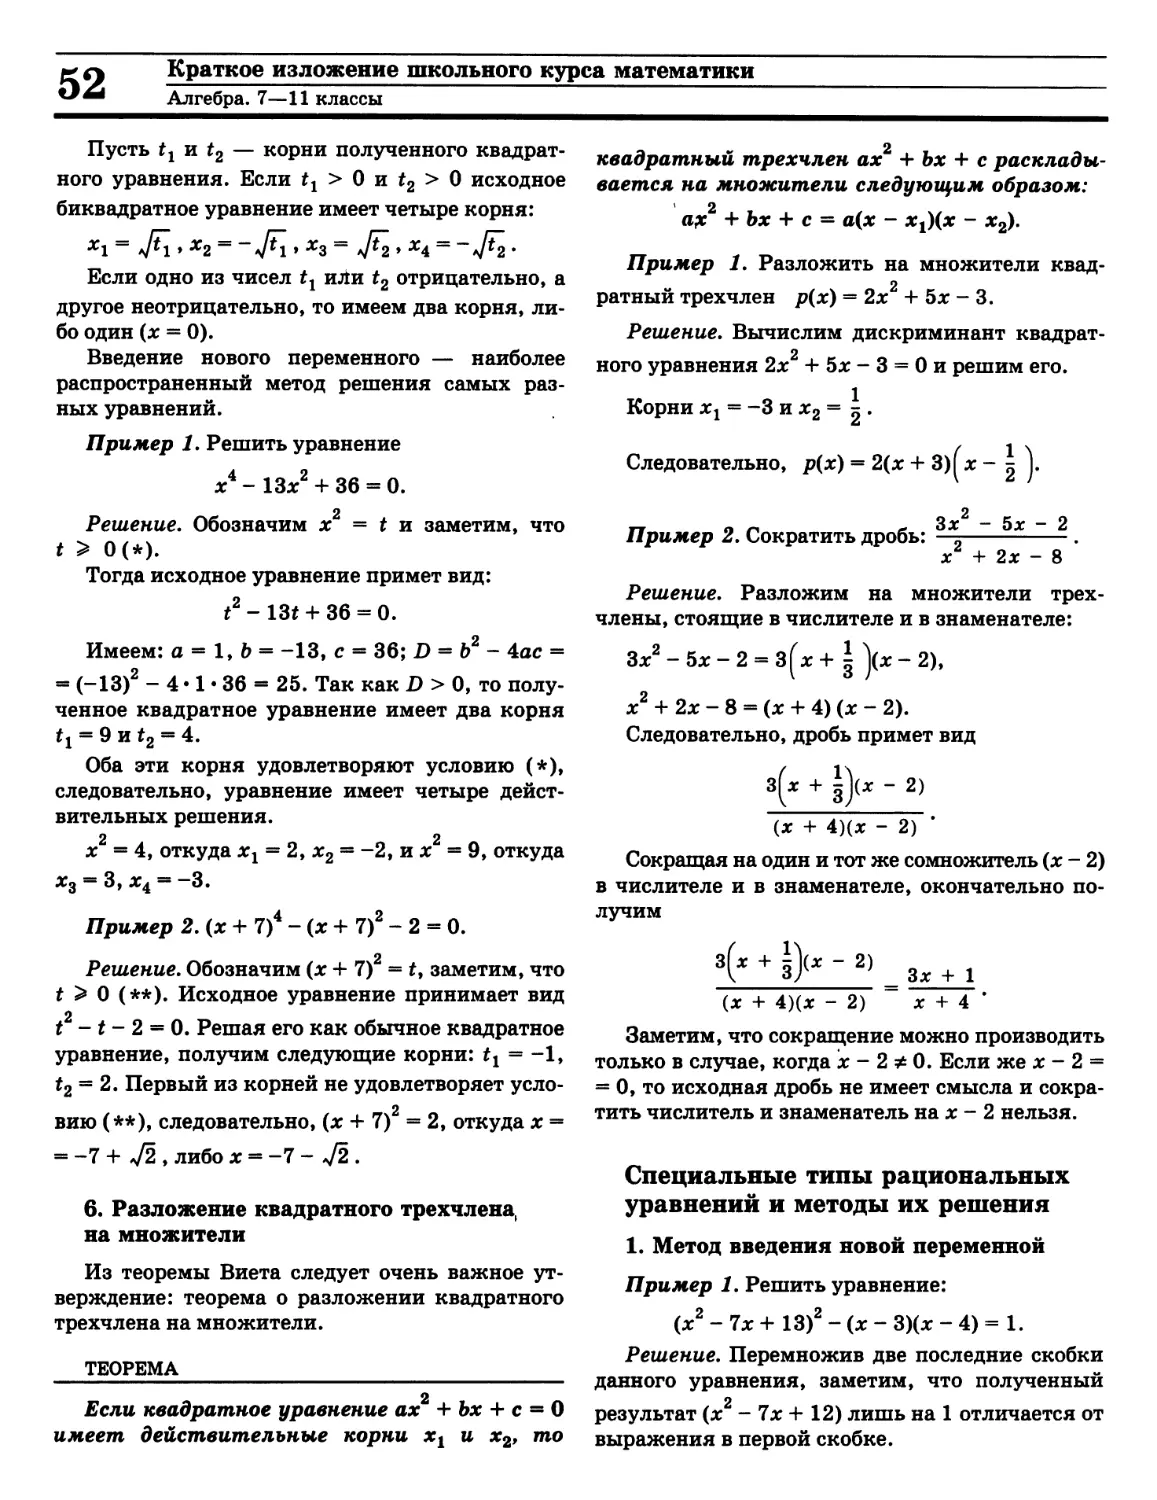 Методы решения рациональных уравнений
Разложение квадратного трехчлена на множители